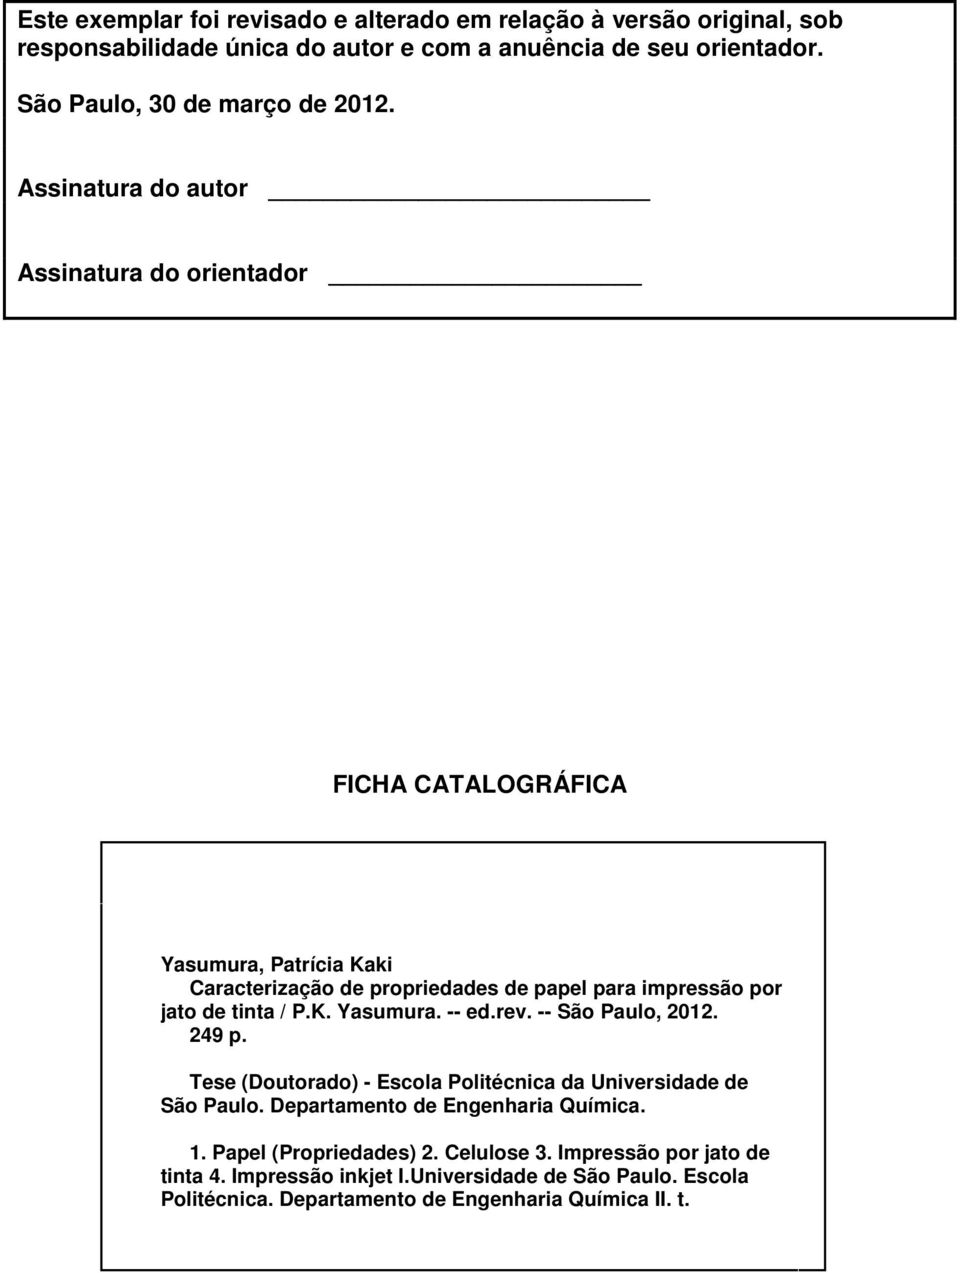 Assinatura do autor Assinatura do orientador FICHA CATALOGRÁFICA Yasumura, Patrícia Kaki Caracterização de propriedades de papel para impressão por jato de tinta / P.K. Yasumura. -- ed.